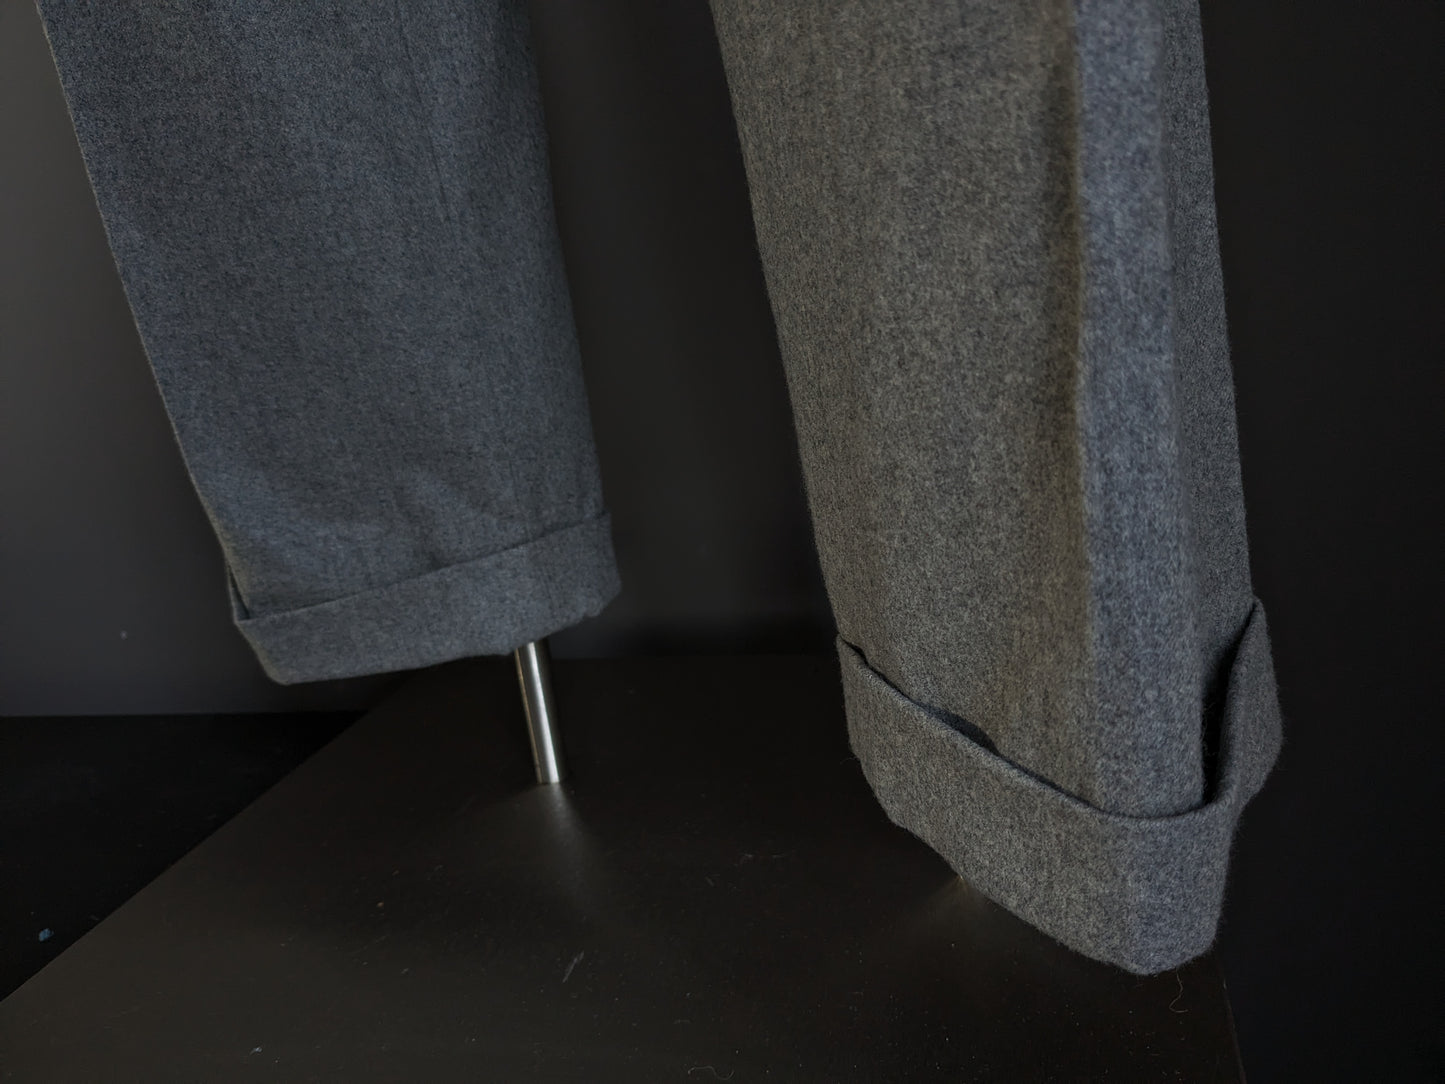 Woolen Ralph Lauren Pantalon. Gray mixed. Size 46 / S.